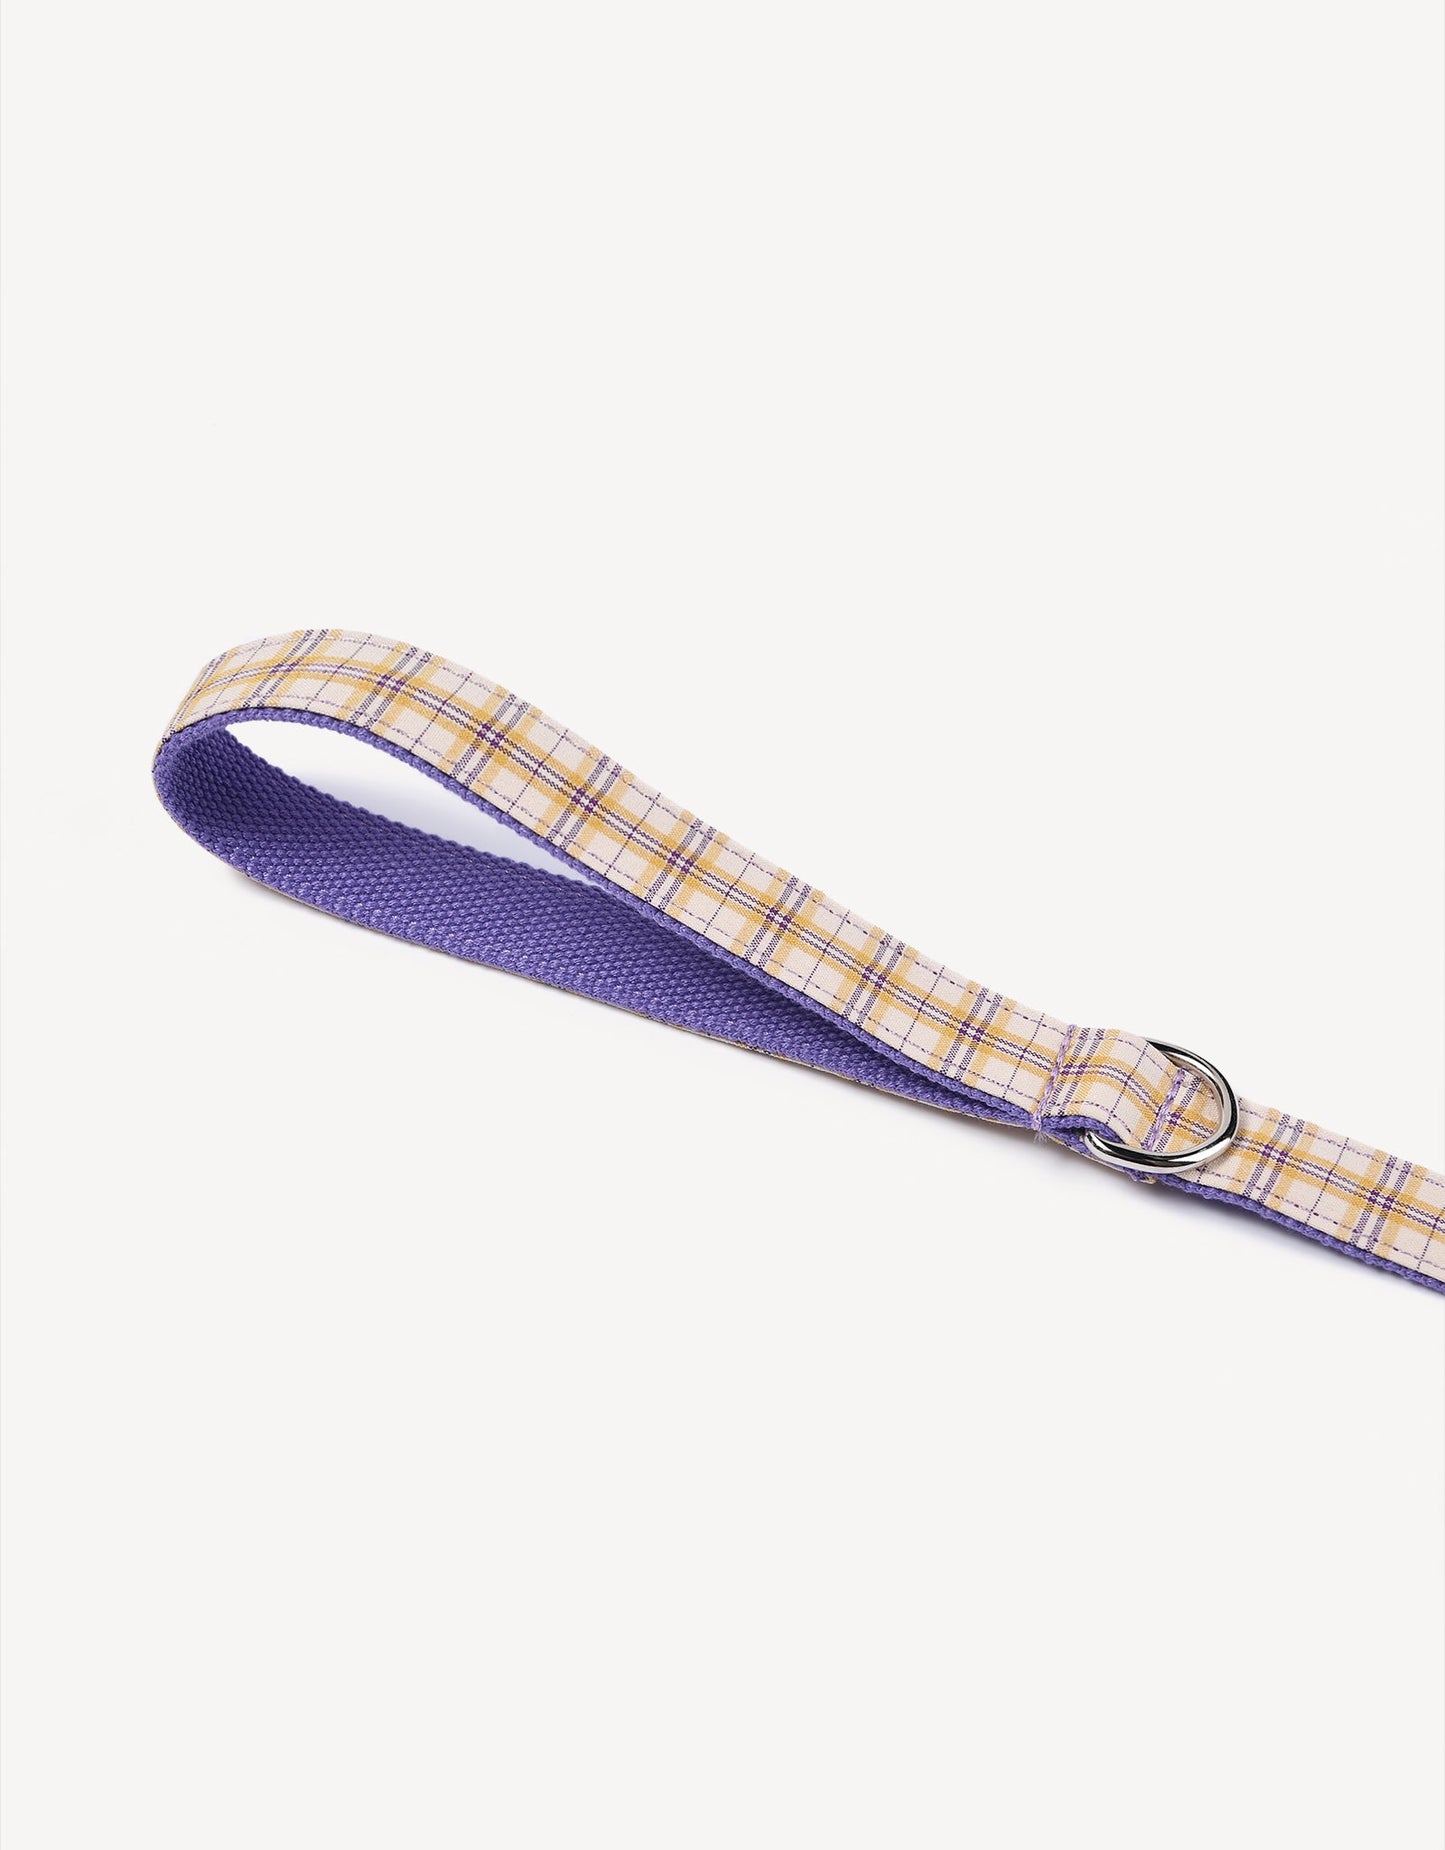 Preppy Plaid Dog Leash - Lilac Purple